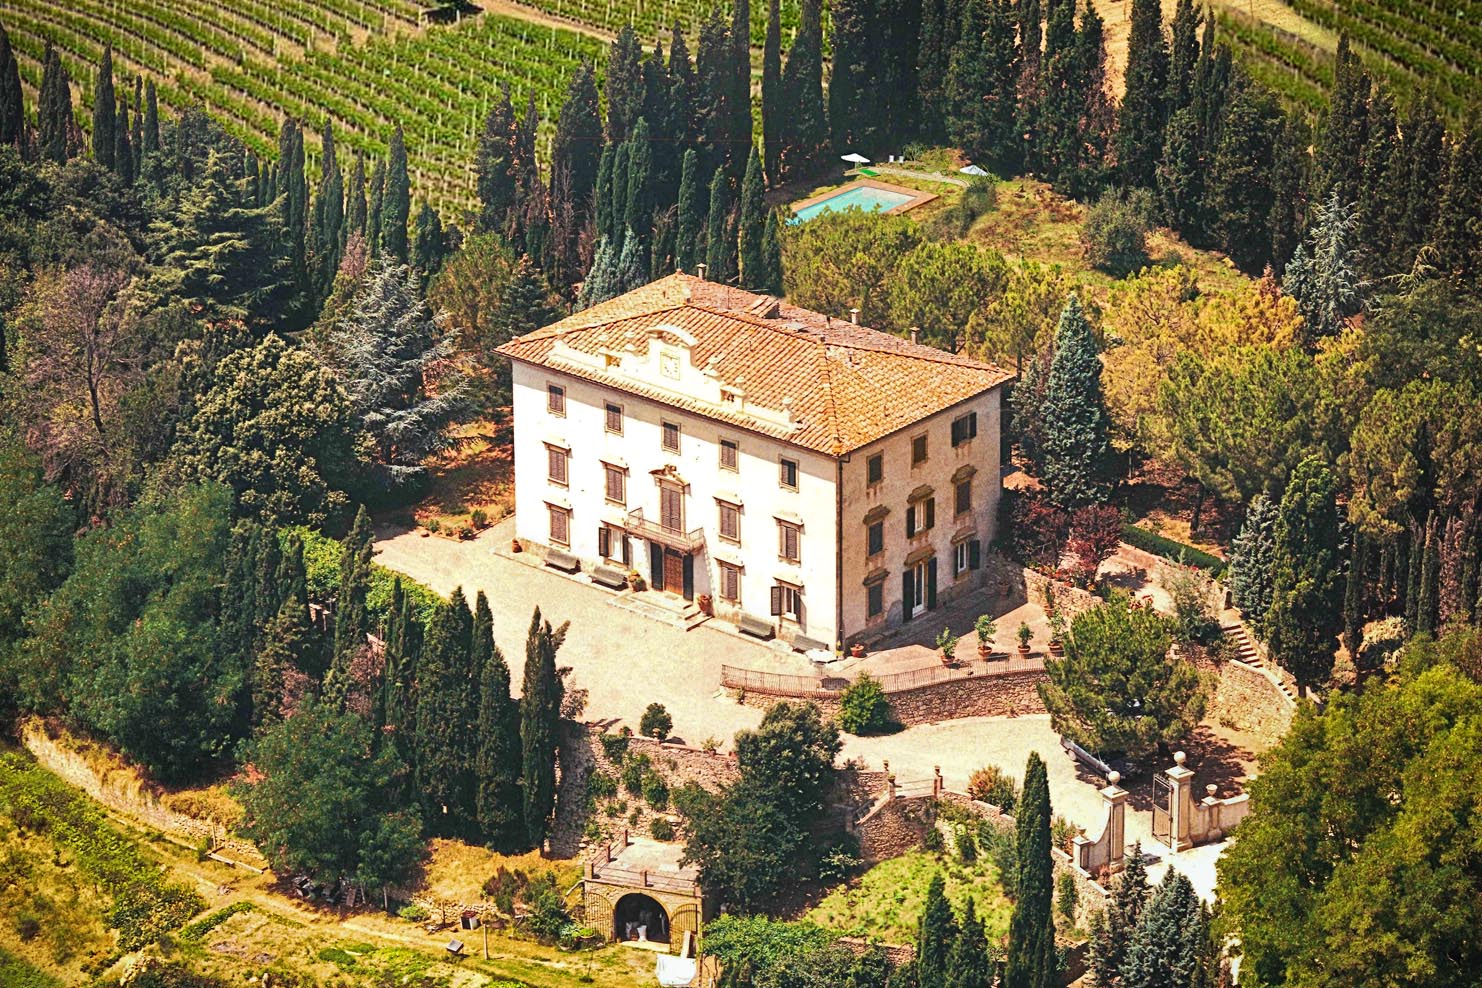 ITALY BOXES_0009_005 - Tuscany Villa